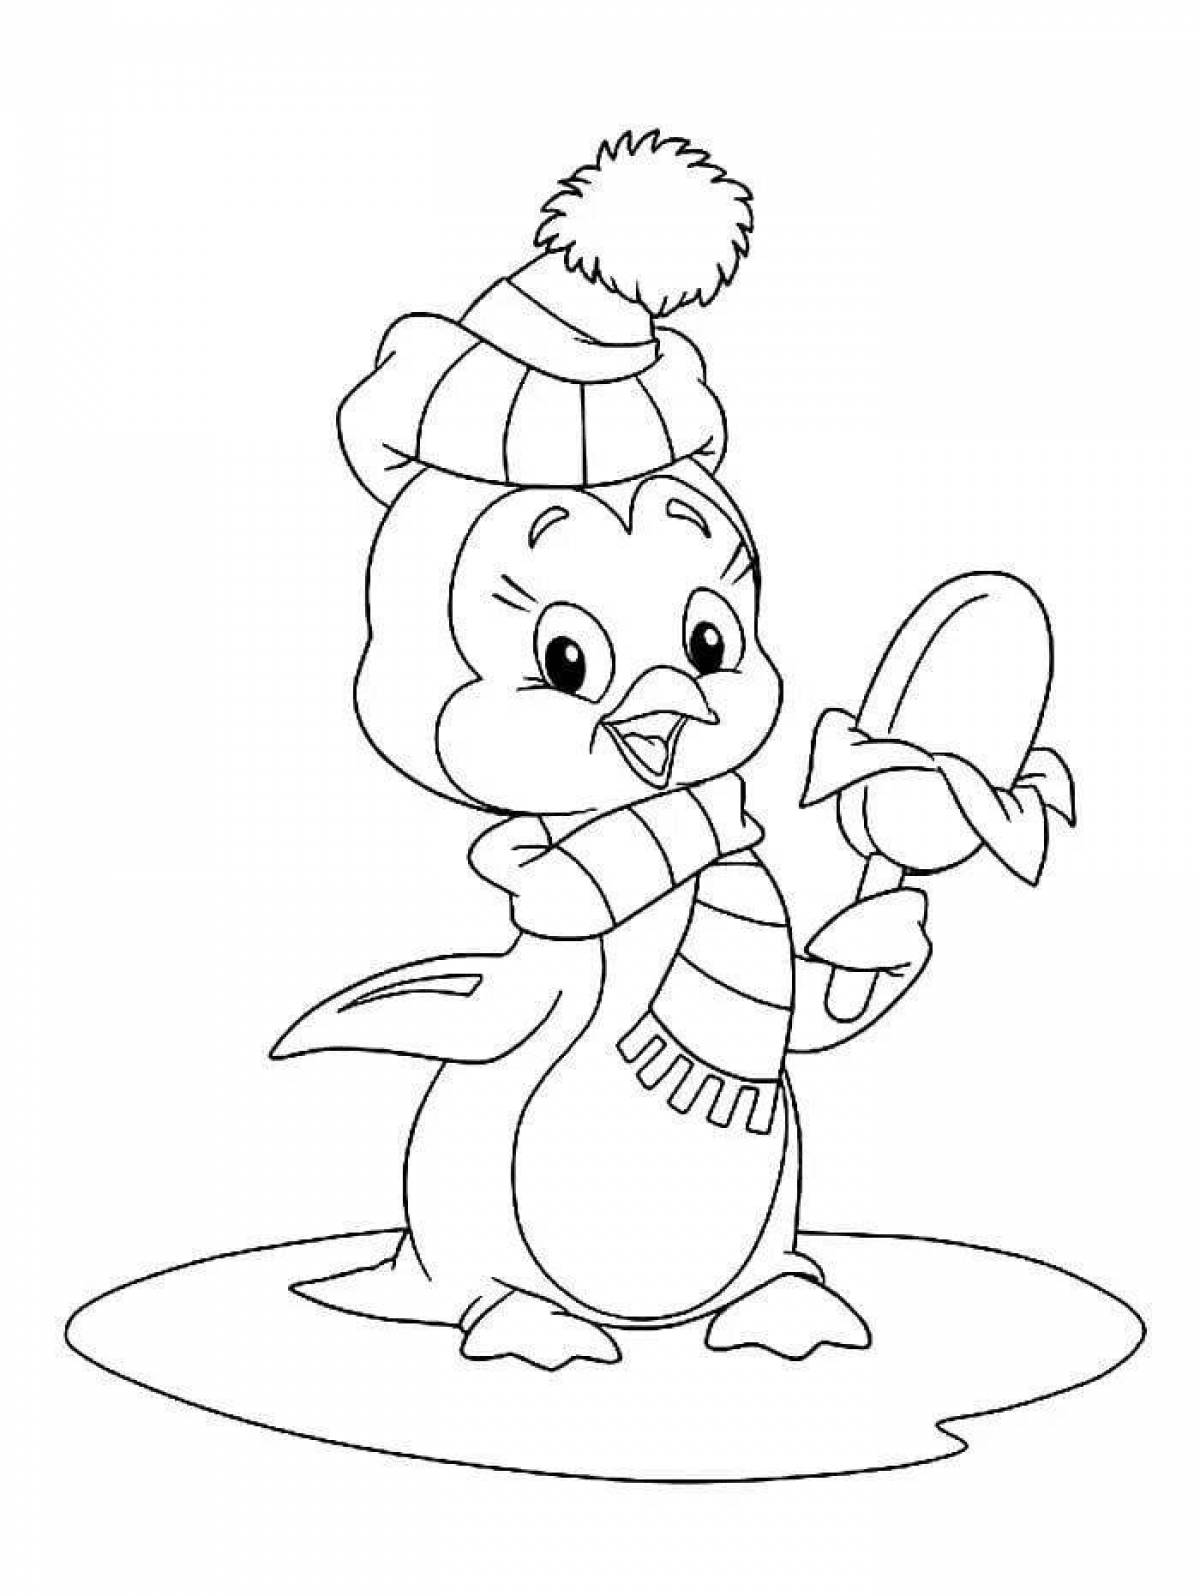 Пингвин раскраска для детей Новогодняя